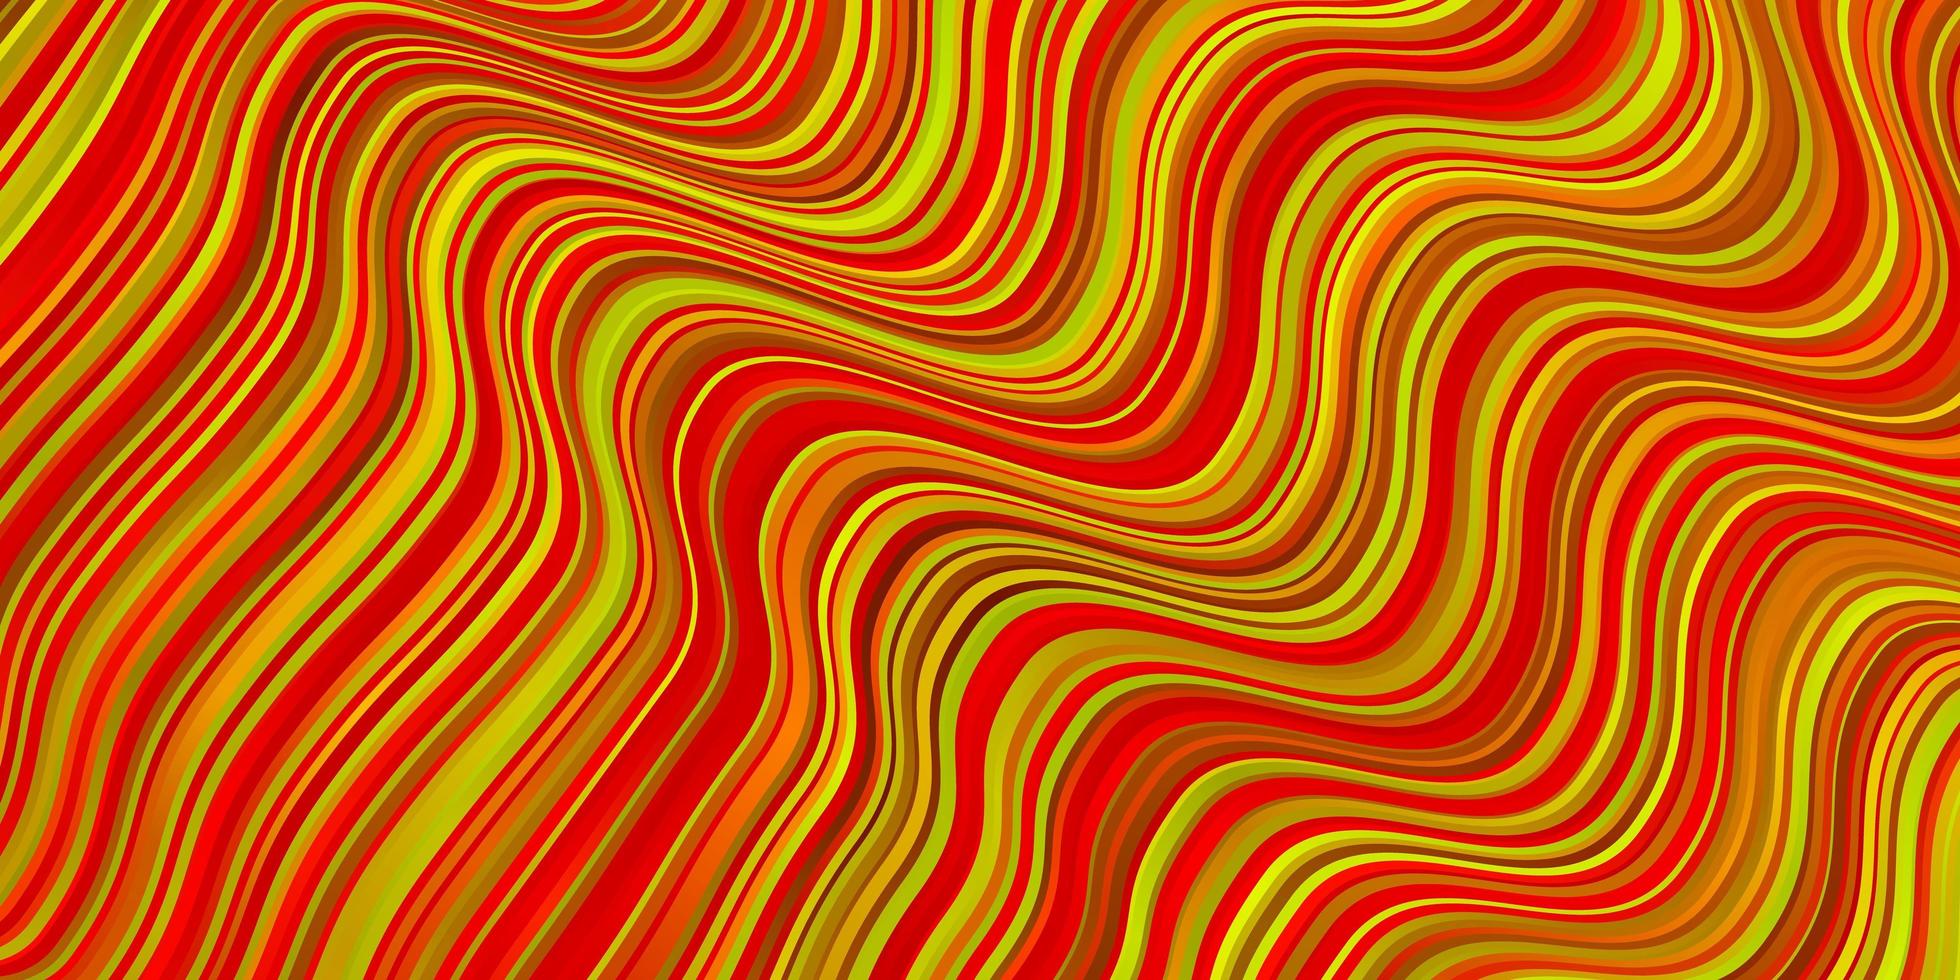 Fondo de vector rojo oscuro, amarillo con líneas dobladas.